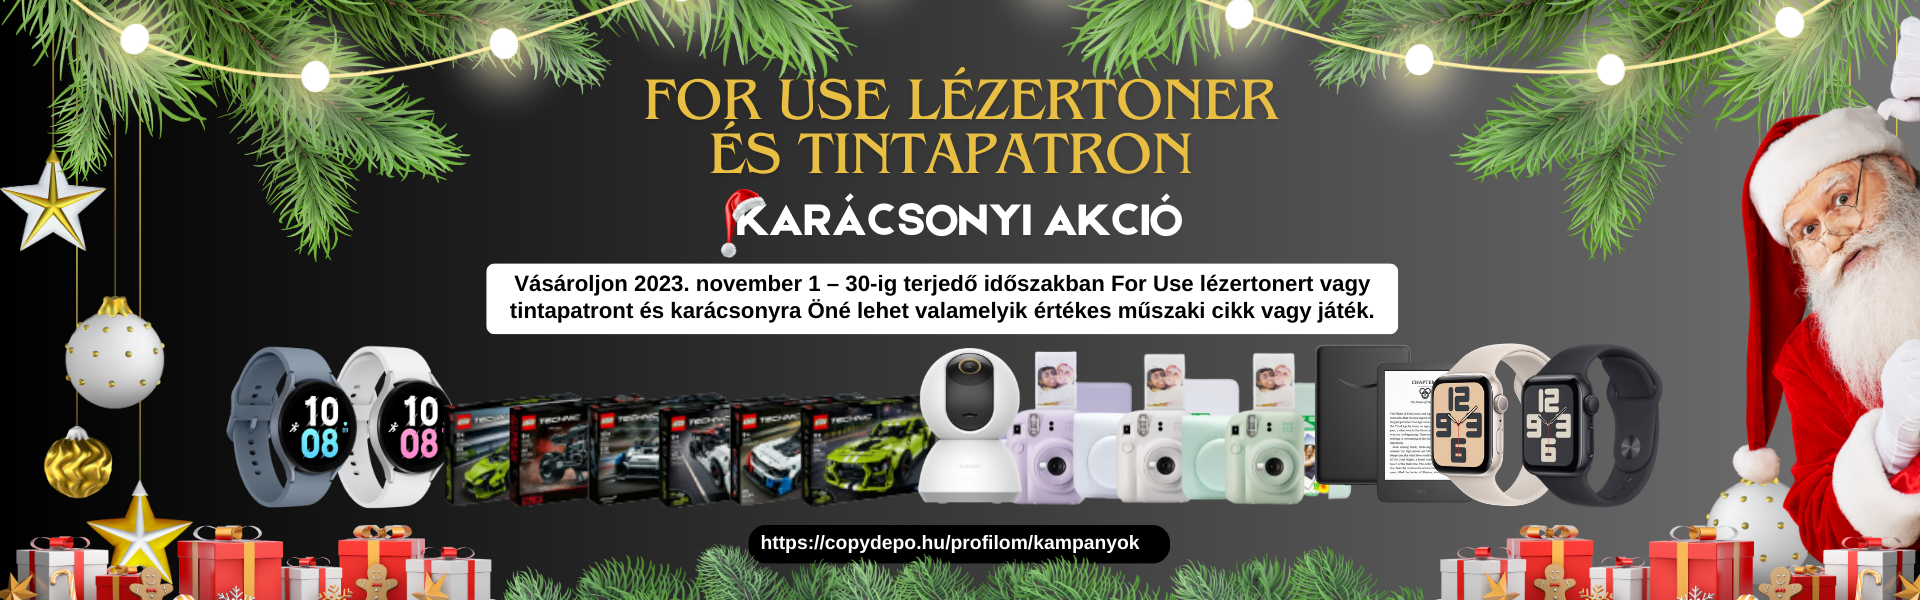 For Use lézertoner és tintapatron karácsonyi akció!2